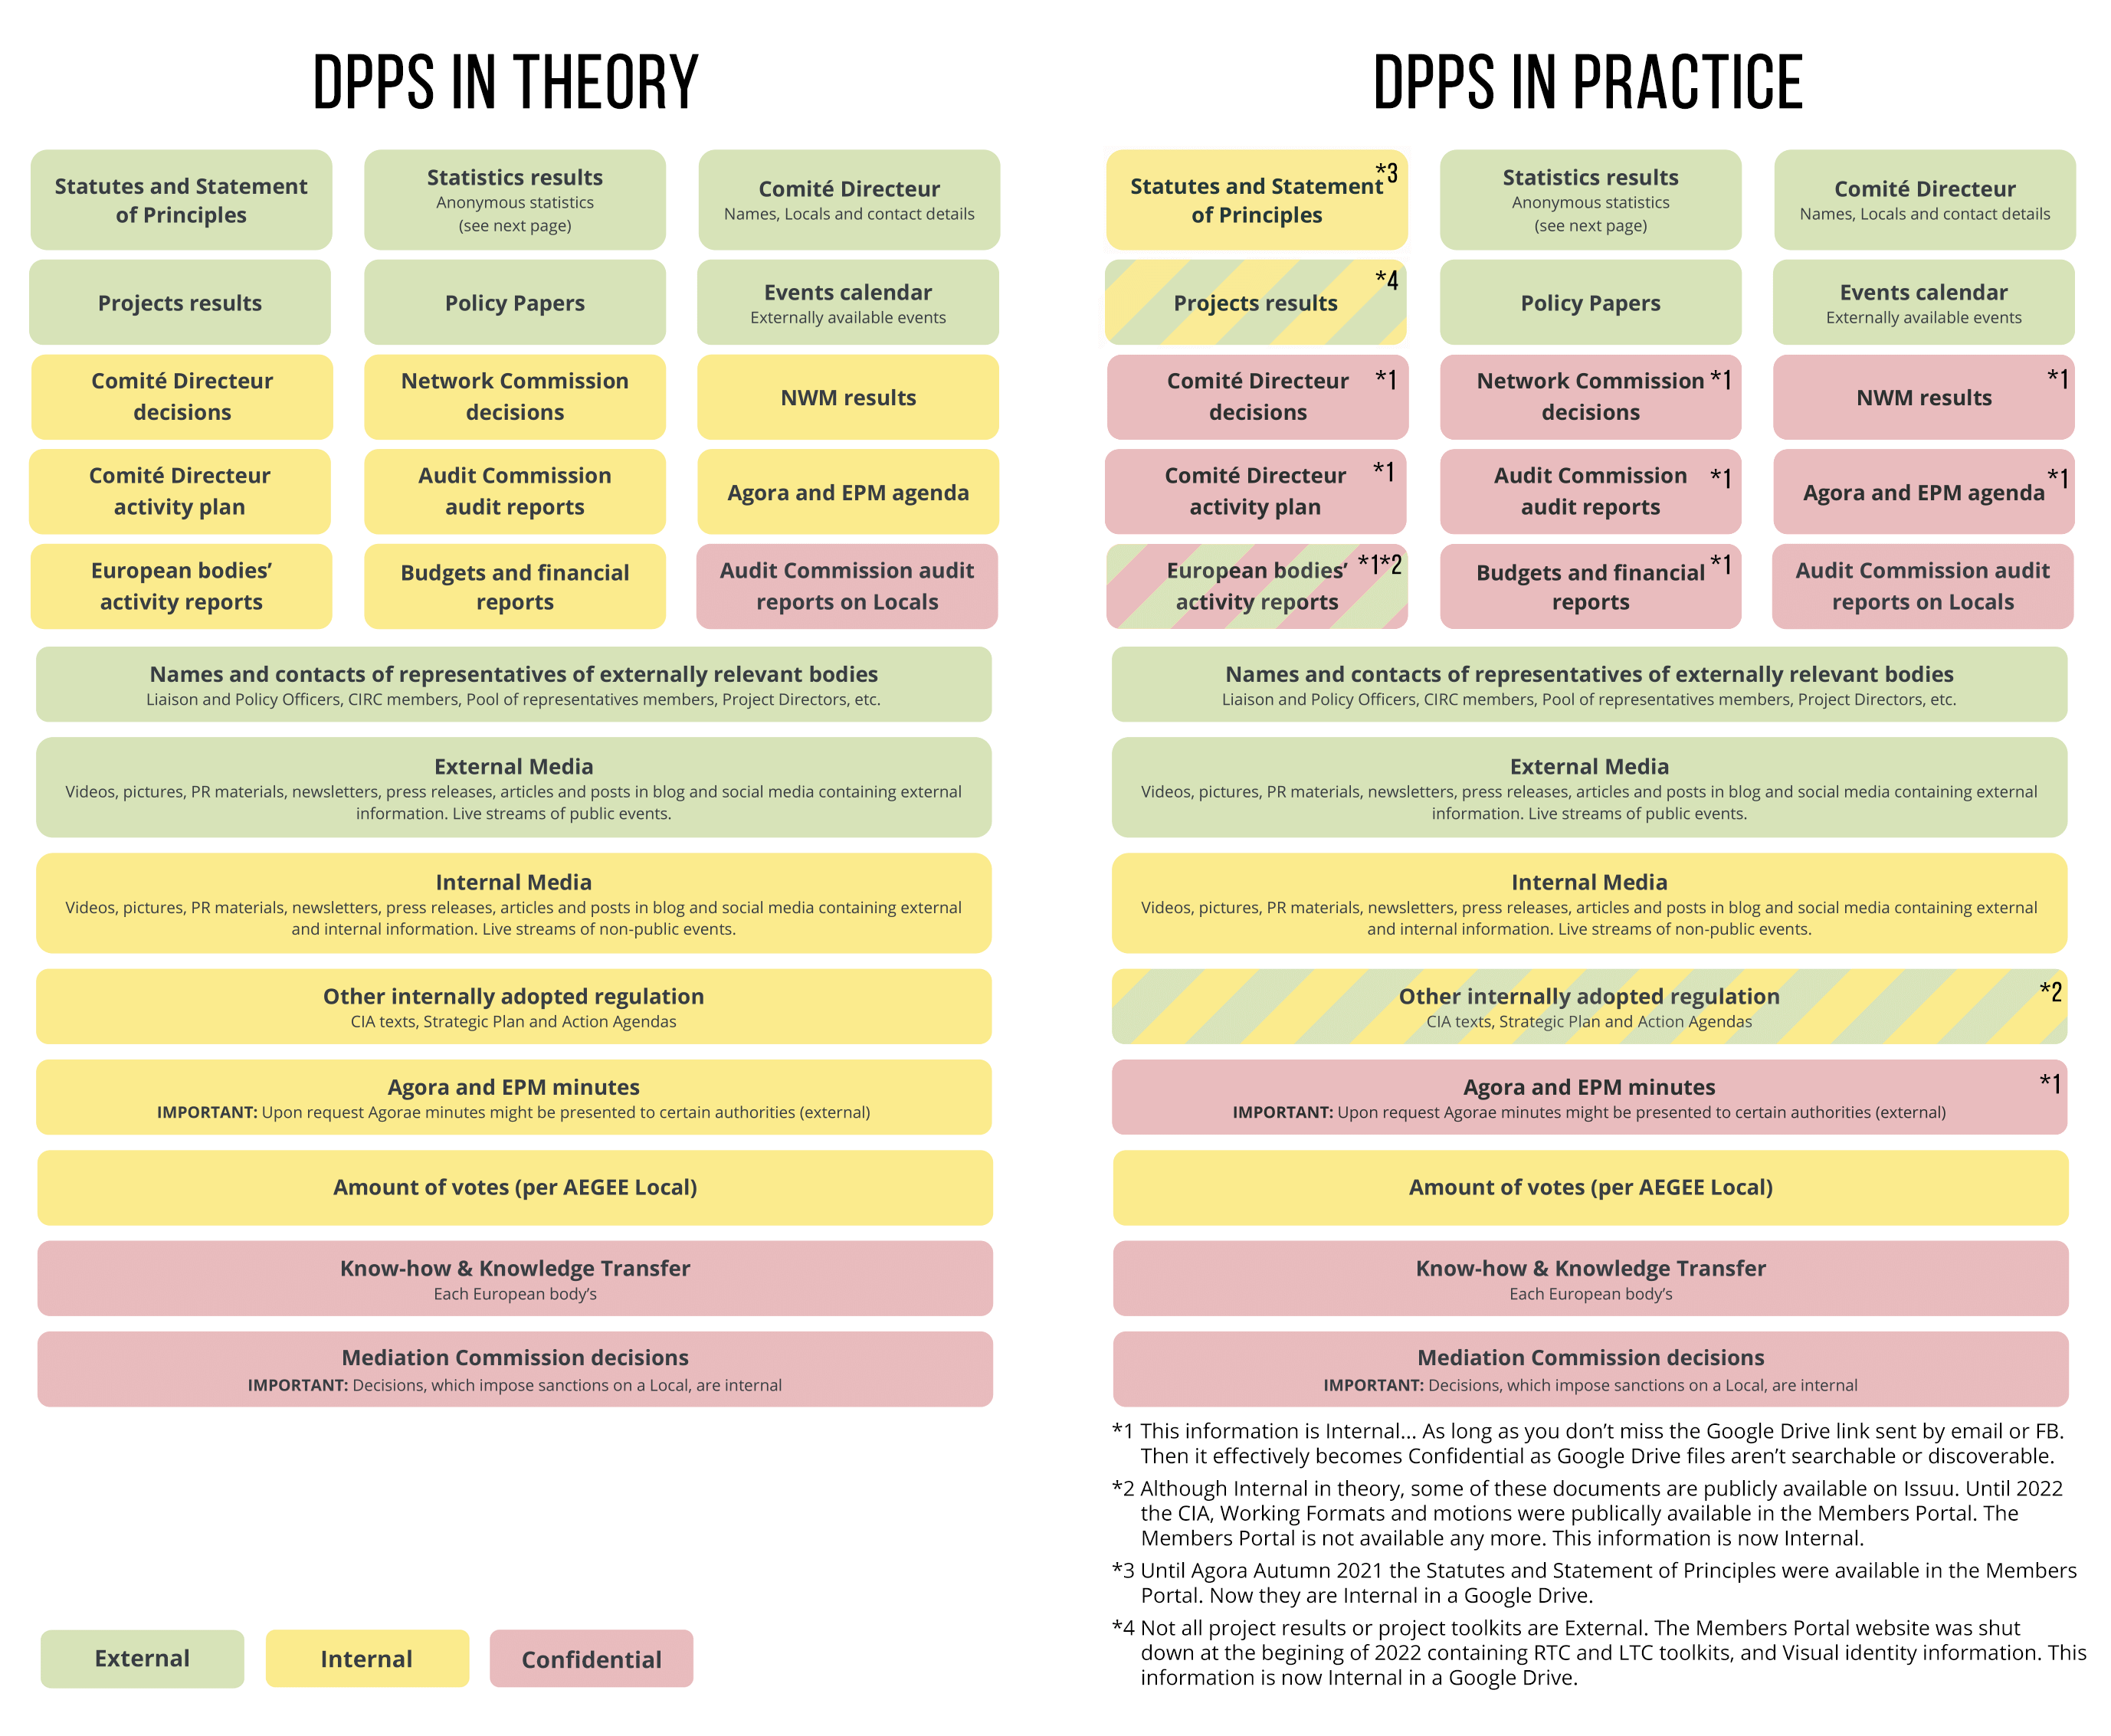 DPPS theory vs reality